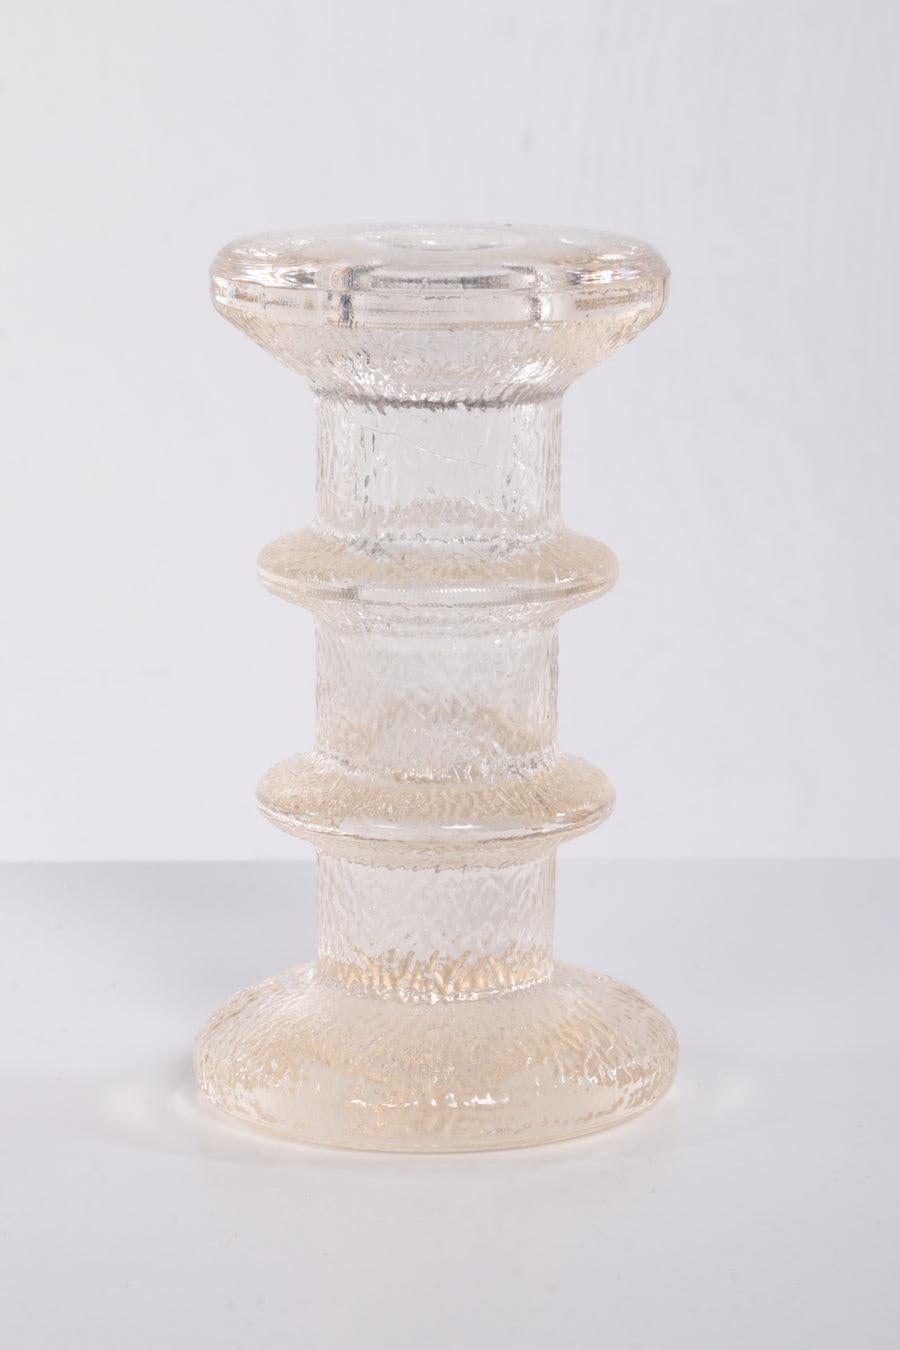 Glas-Kerzenständer Design von Staffan Gellerstedt, 1970er Jahre

Ein Glaskerzenhalter aus Skandinavien: Kerzenhalter mit mehreren Ringen, entworfen von Staffan Gellerstedt, hergestellt von Pukeberg 1966.

Dieses Glasobjekt aus den 1970er Jahren 
hat